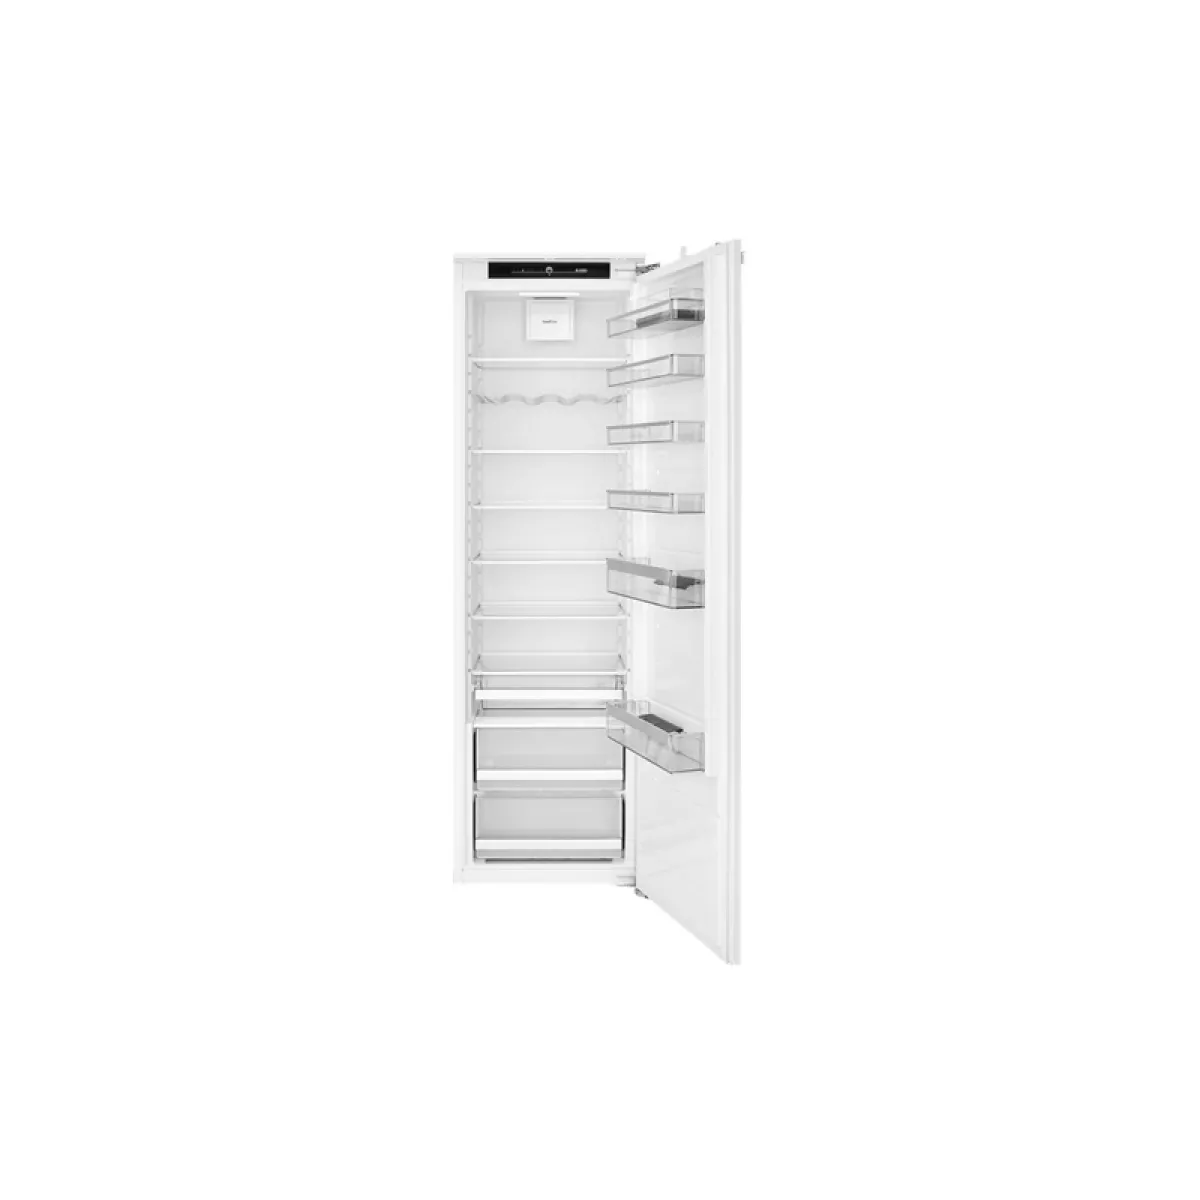 #3 - ASKO R31831I - Integrerbart køleskab